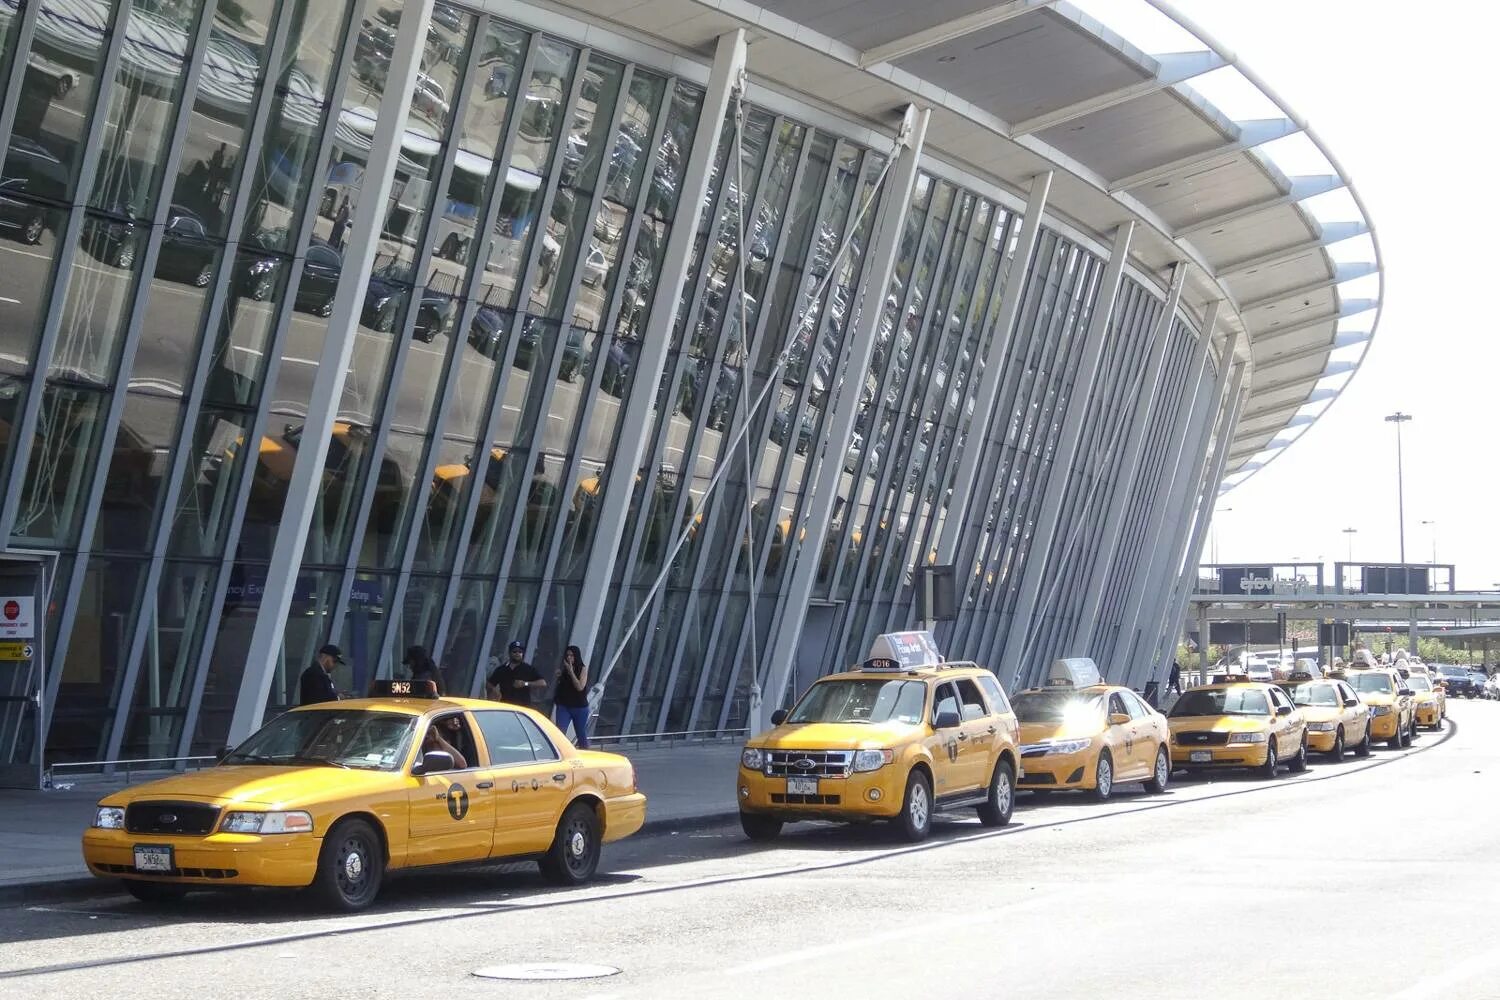 Аэропорт транспорт такси. JFK аэропорт такси. Аэропорт Нью-Йорка. Такси в аэропорту Нью-Йорка. Аэропорт Джона Кеннеди такси.